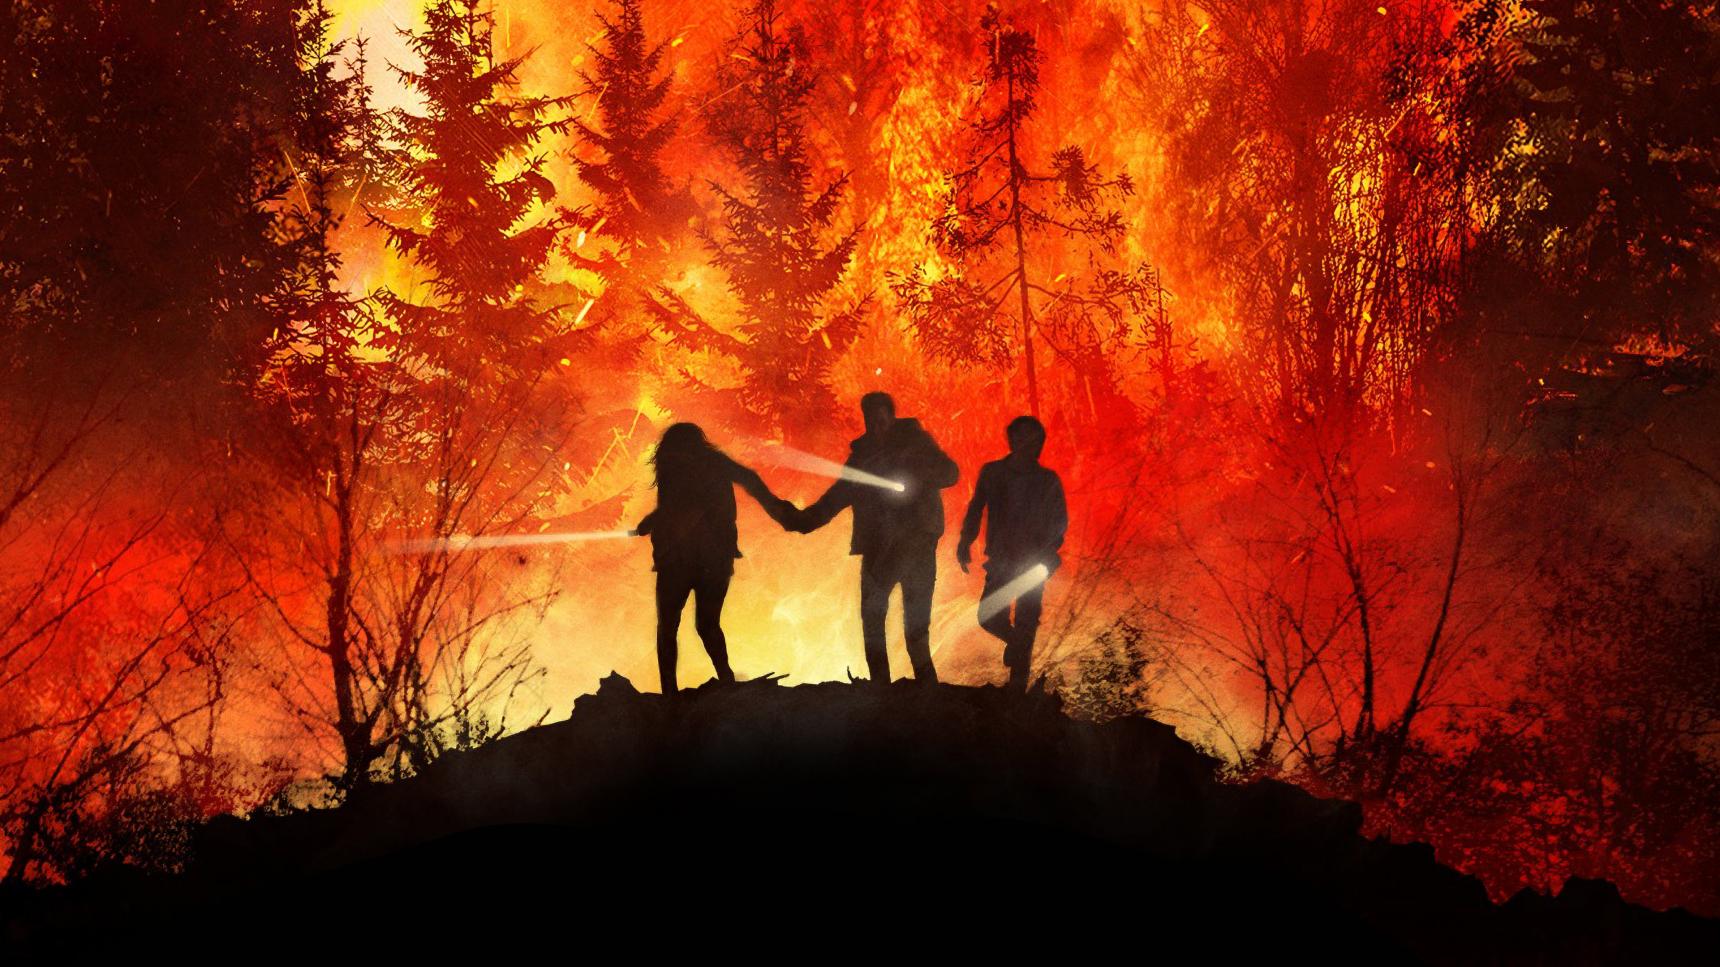 poster de On Fire